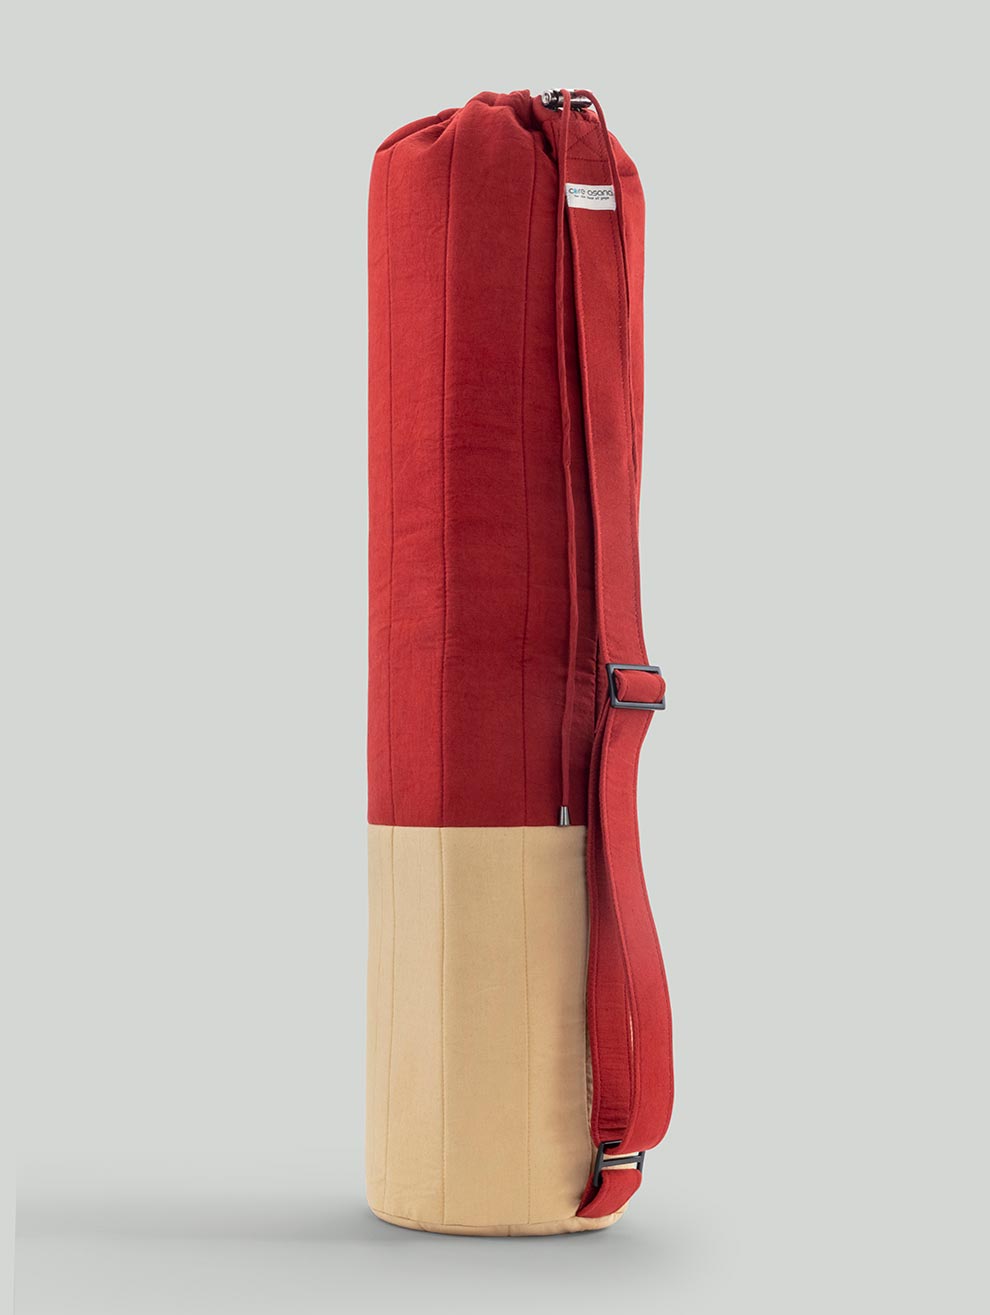 Warrior2 Yoga Mat Bag Carrier Yoga Sling Backpack Fits 1/2 Thick Mat,  Large Zipper Pockets & Bottle Holders